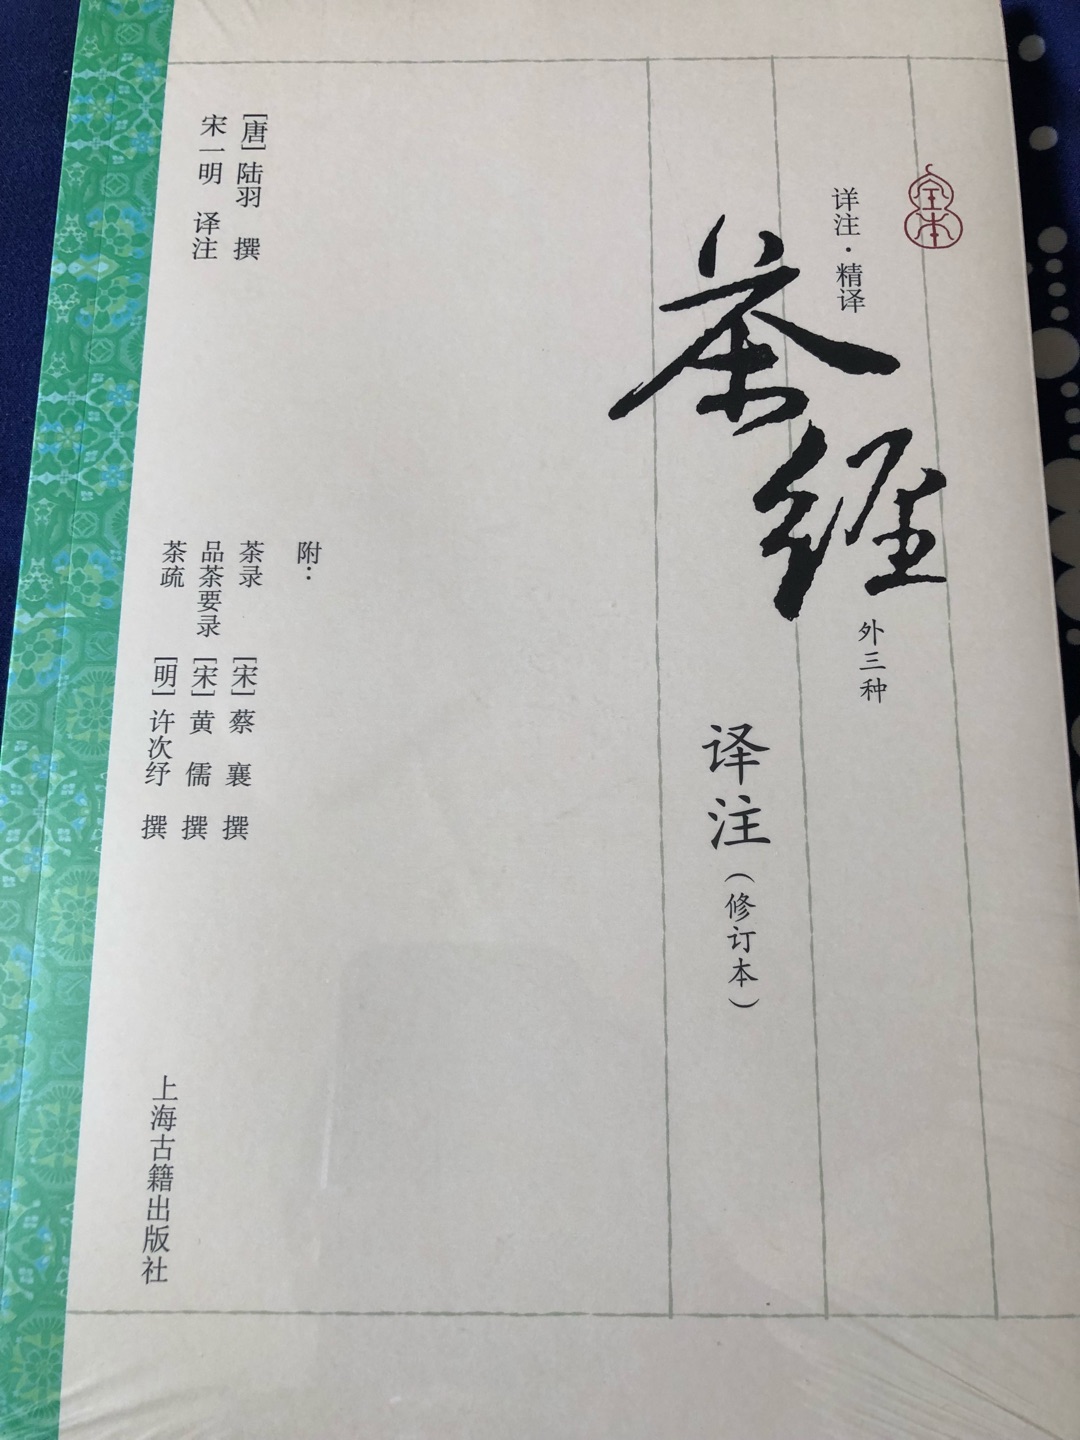 好書，值得擁有。謝謝“上海古籍出版社”，也感謝“京東”。你們辛苦了。